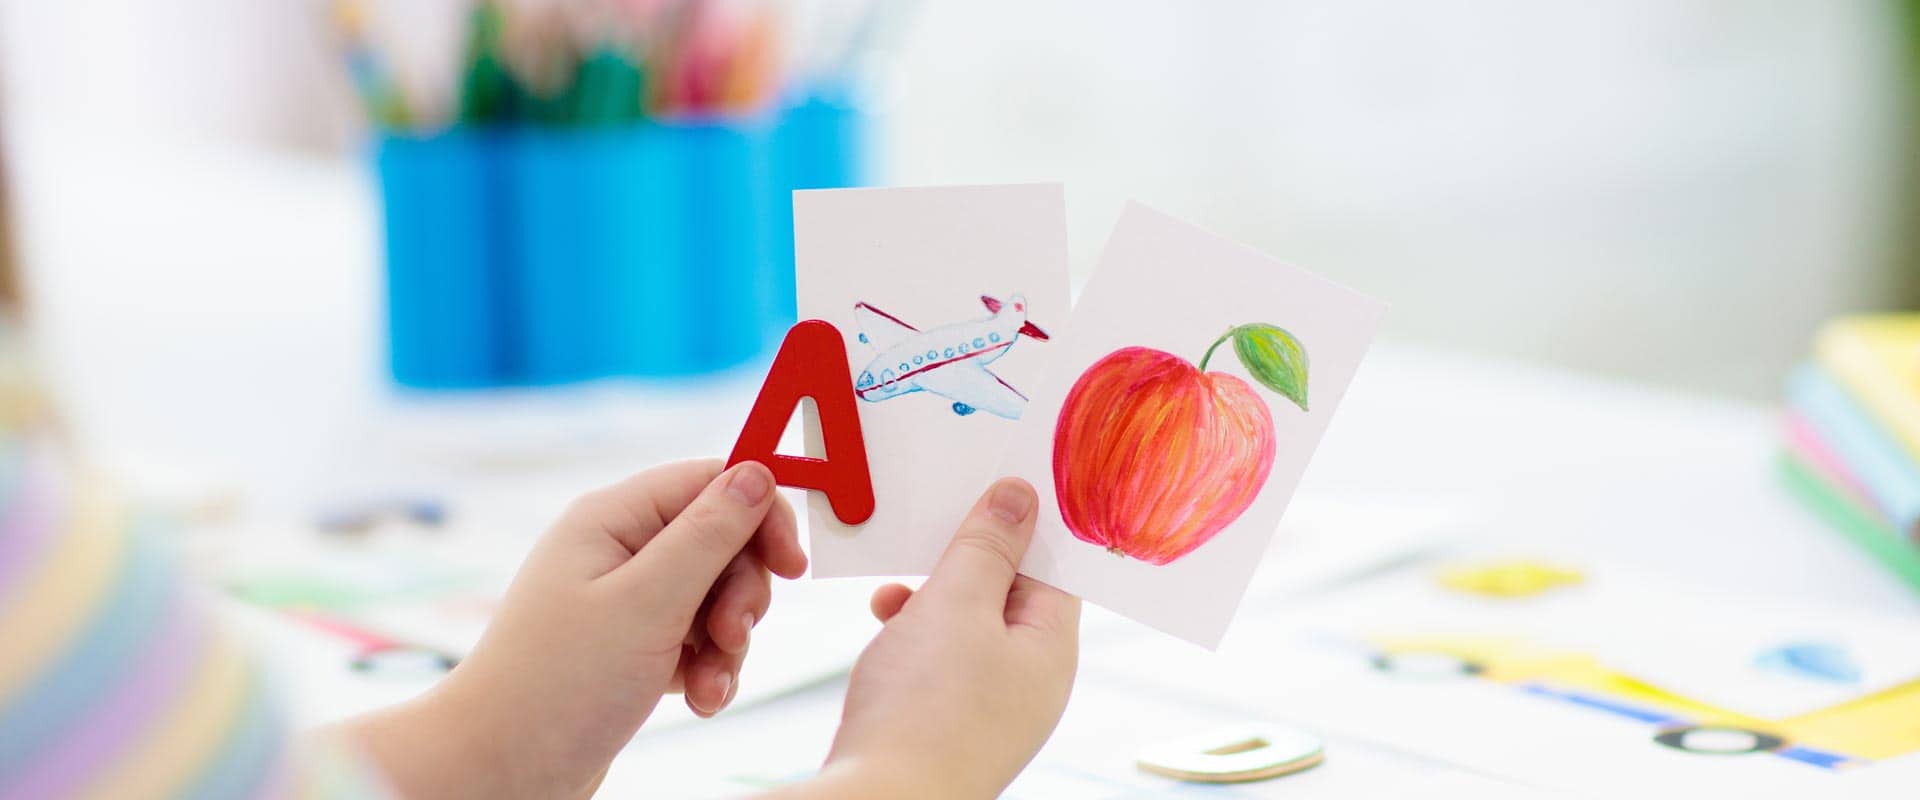 Kinderhände halten eine Zeichnung von einem Apfel